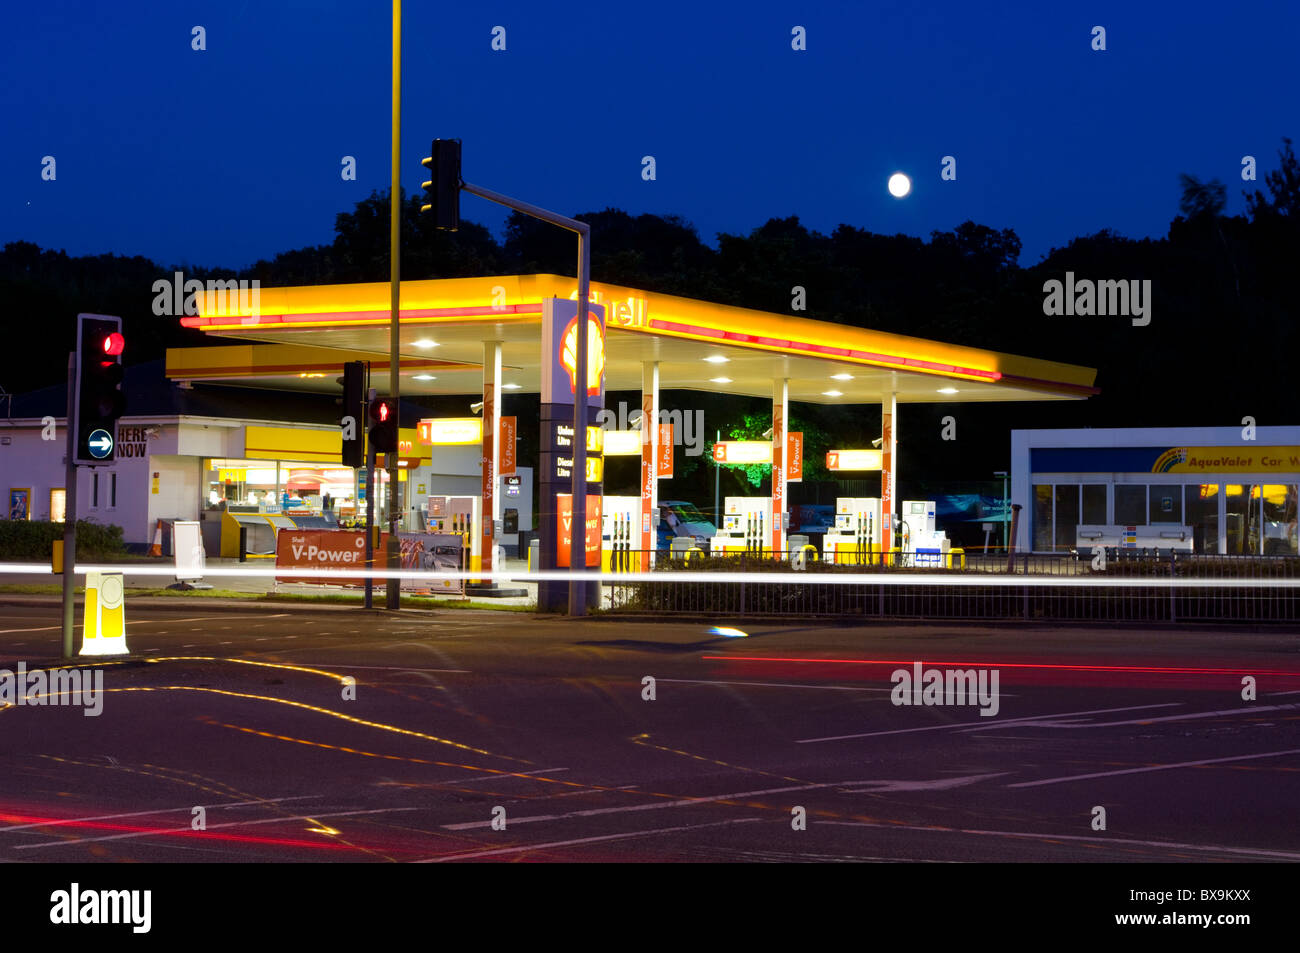 Tankstelle Shell Abenddämmerung Vorplatz Stockfoto